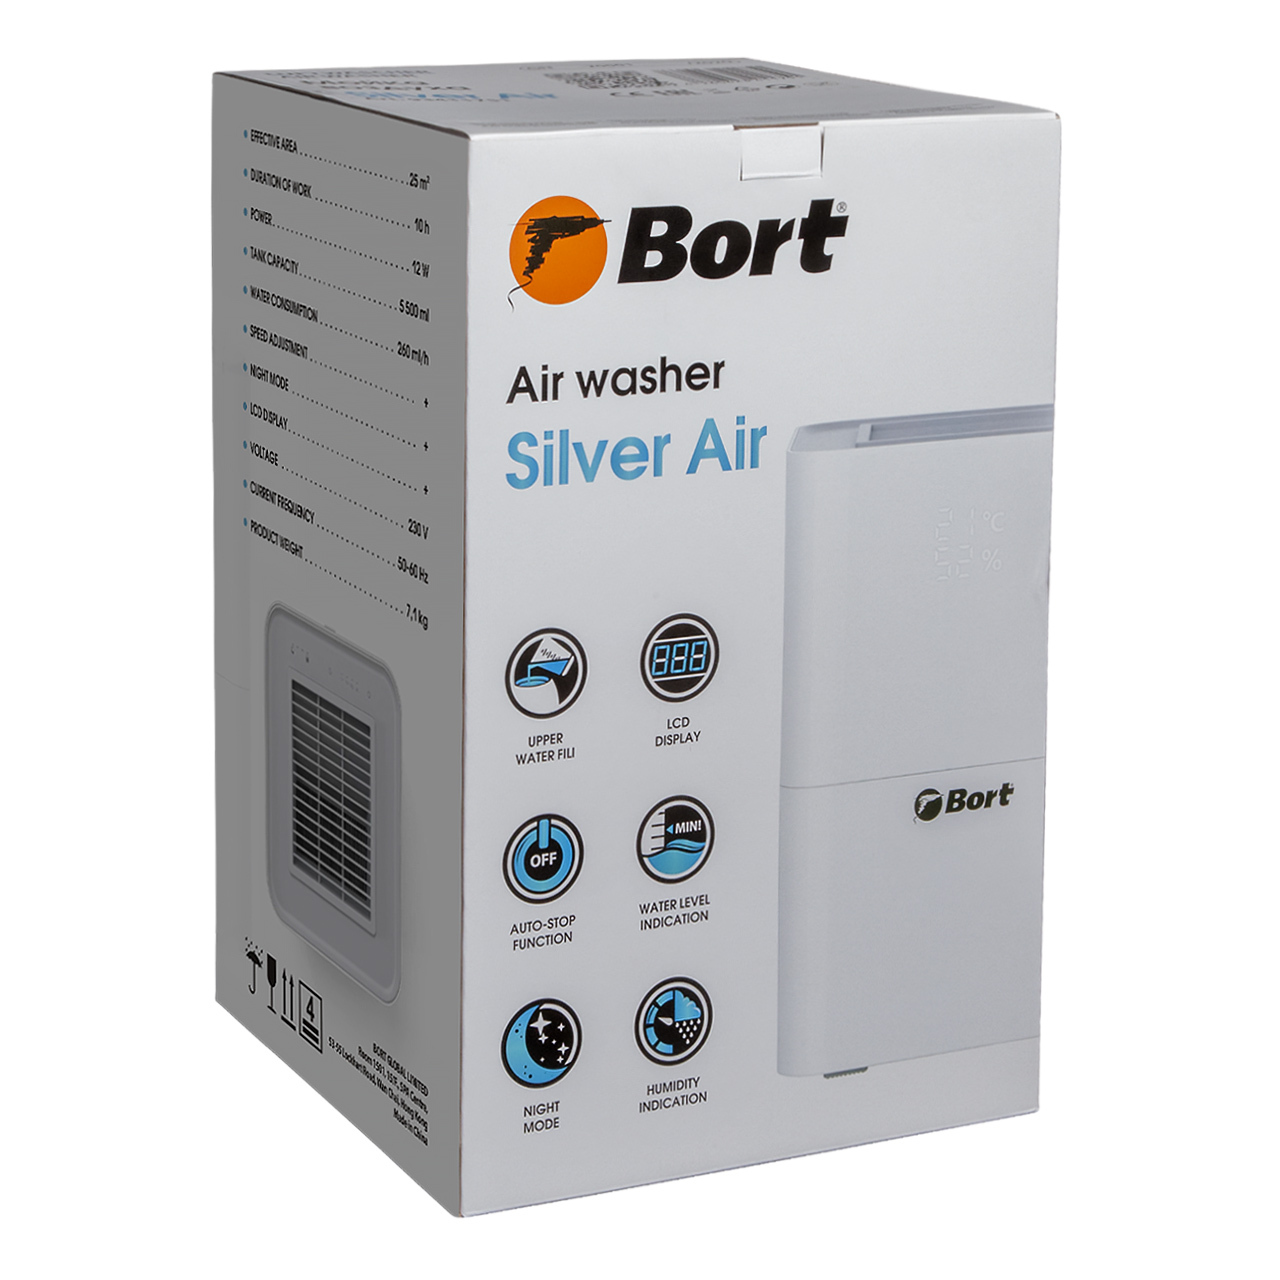 Bort Silver Air